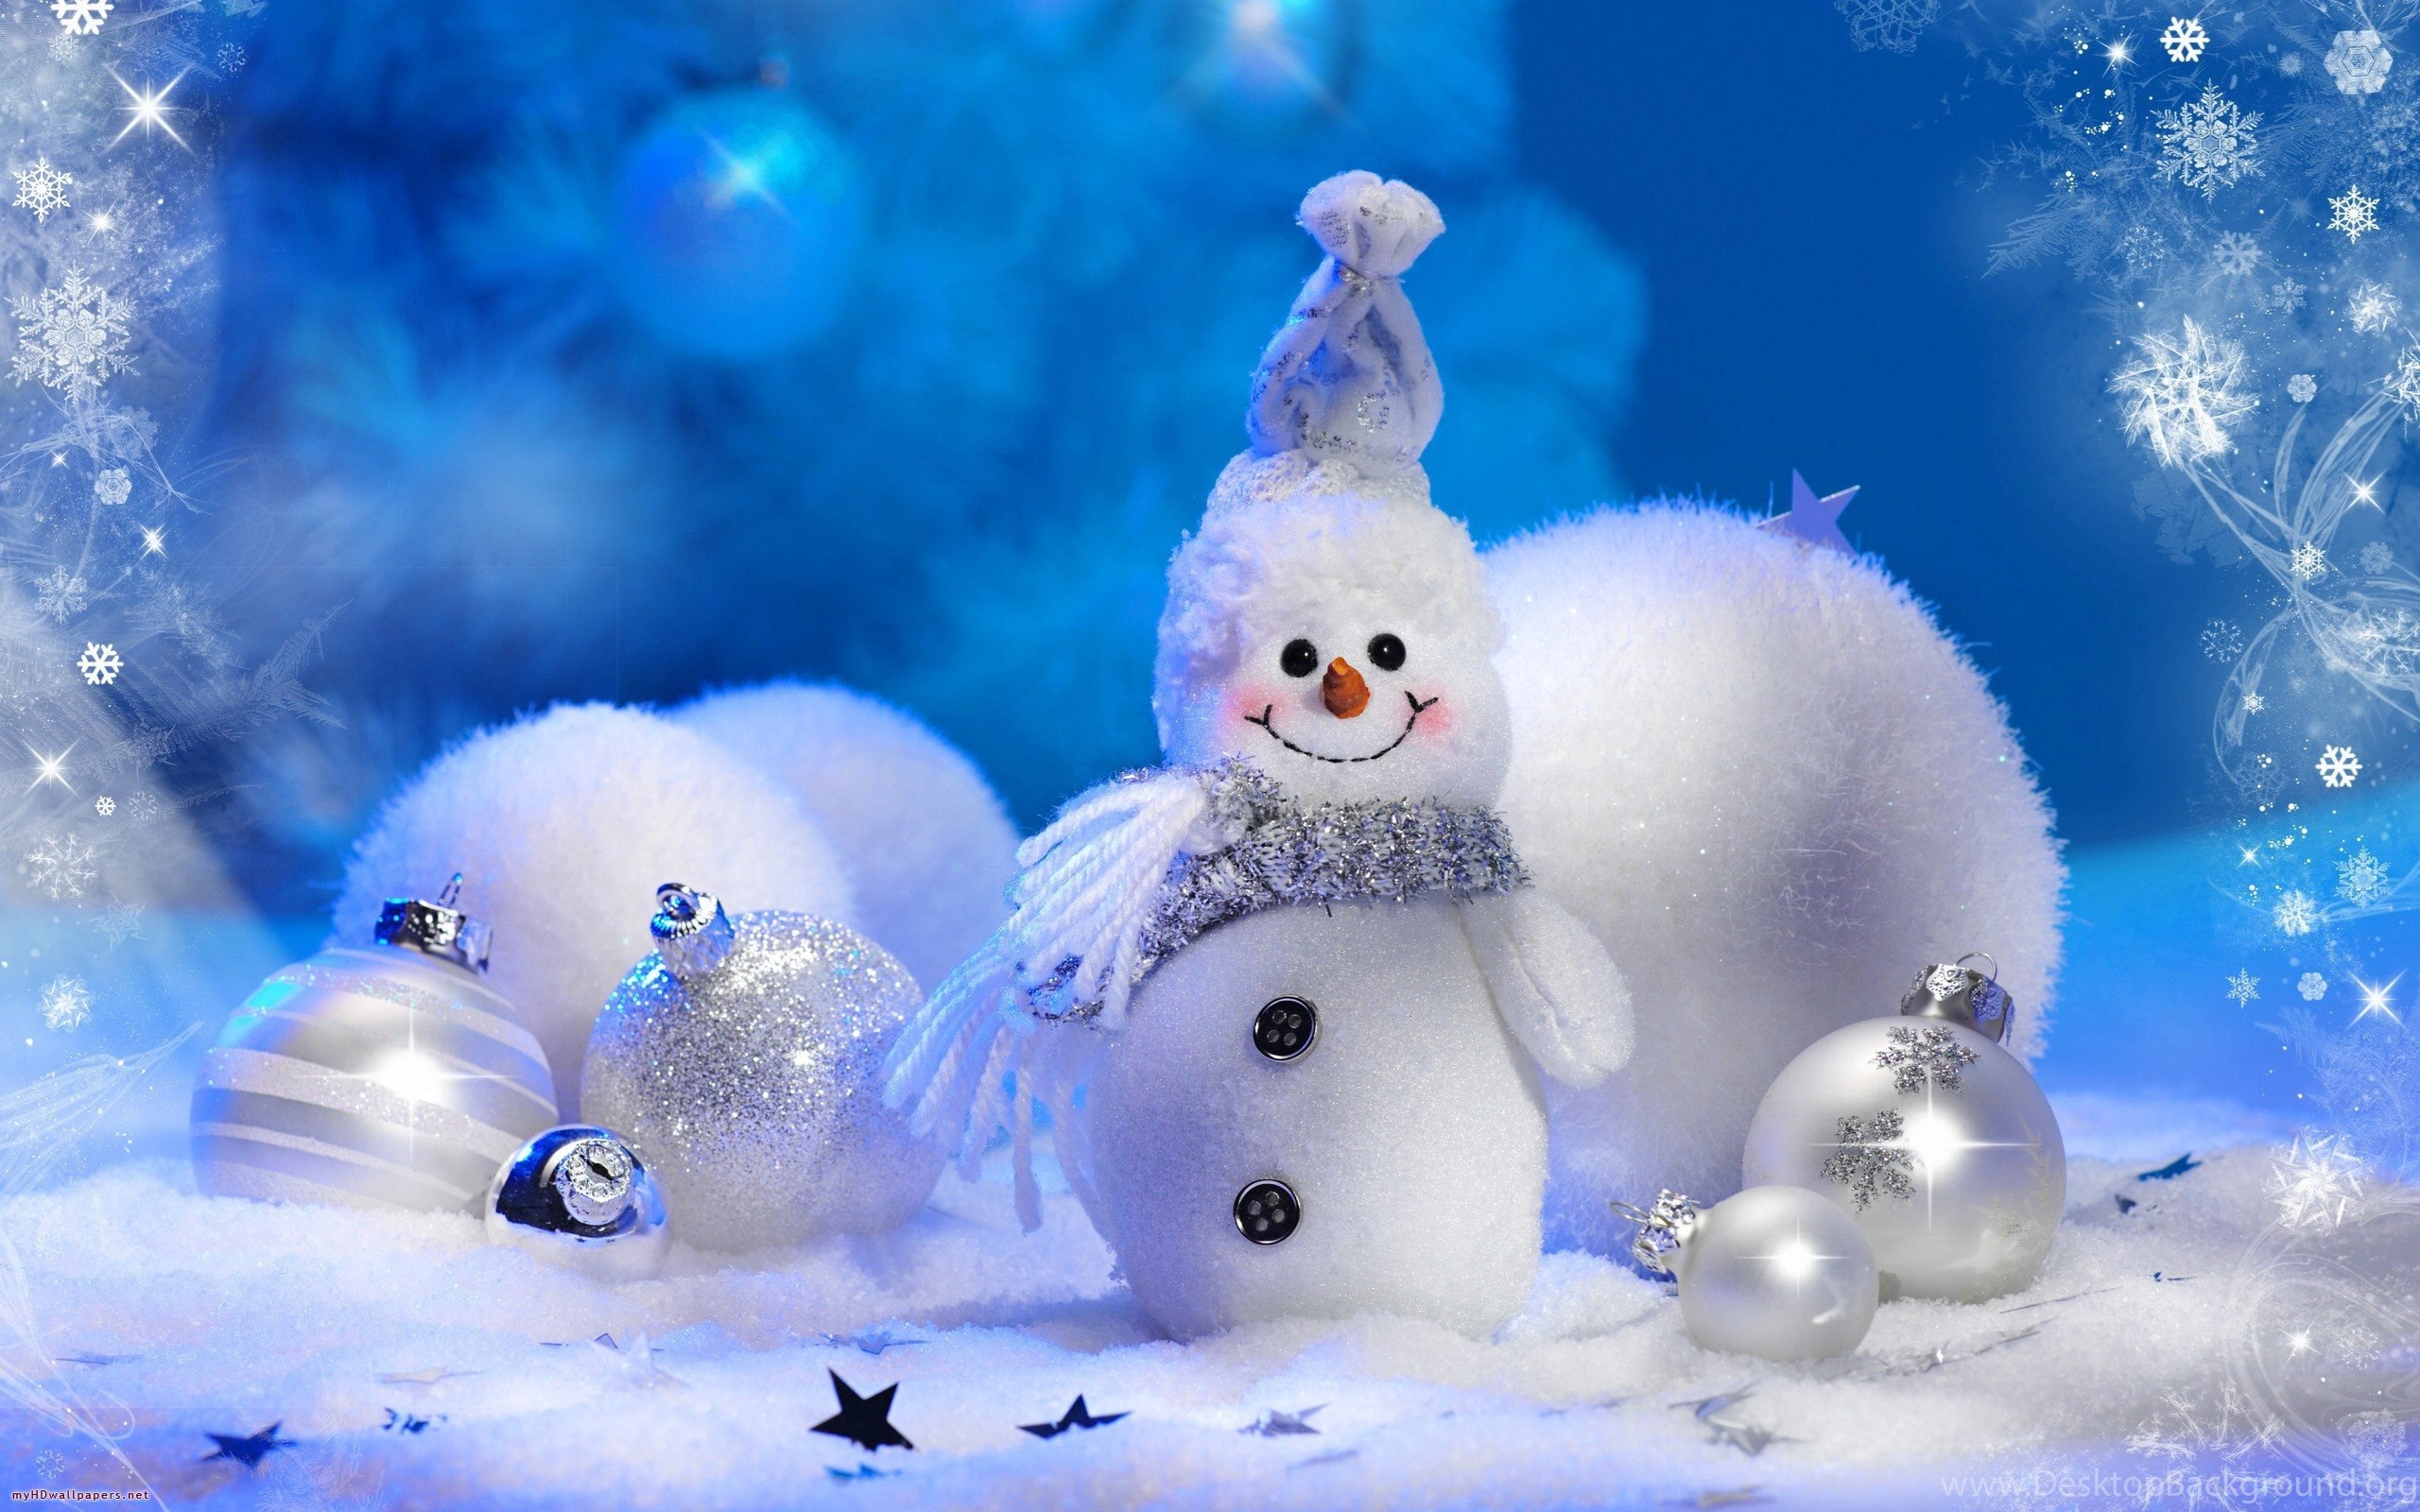 HD Snowman Winter Christmas Wallpaper High Resolution Full Size. Desktop Background